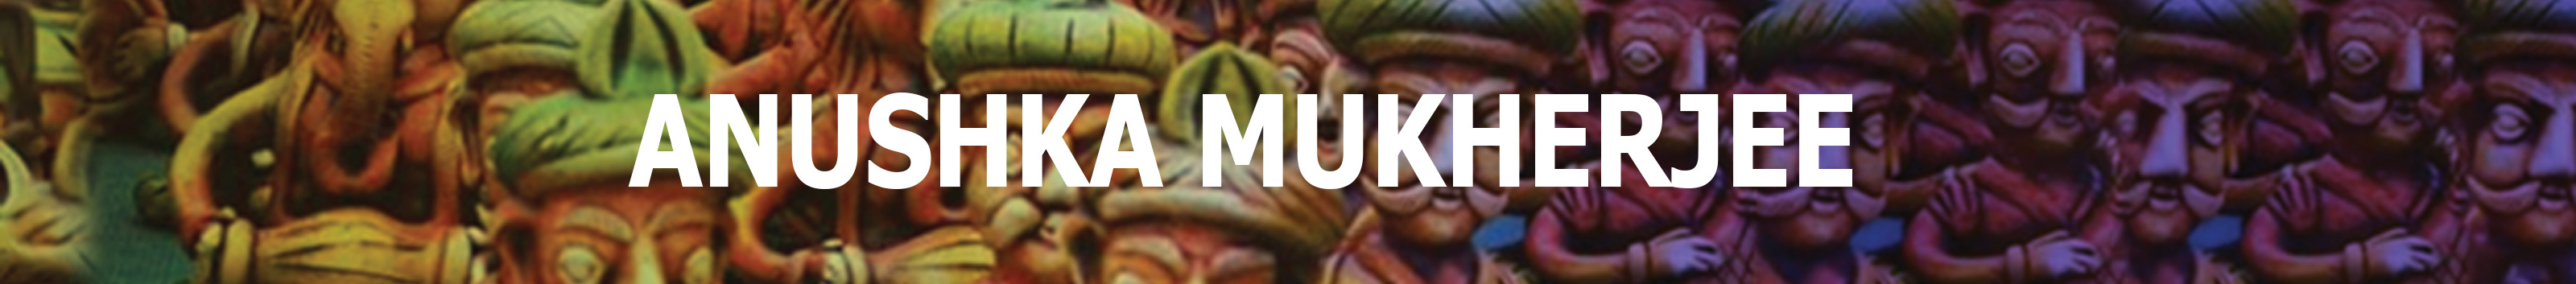 ANUSHKA MUKHERJEE's profile banner